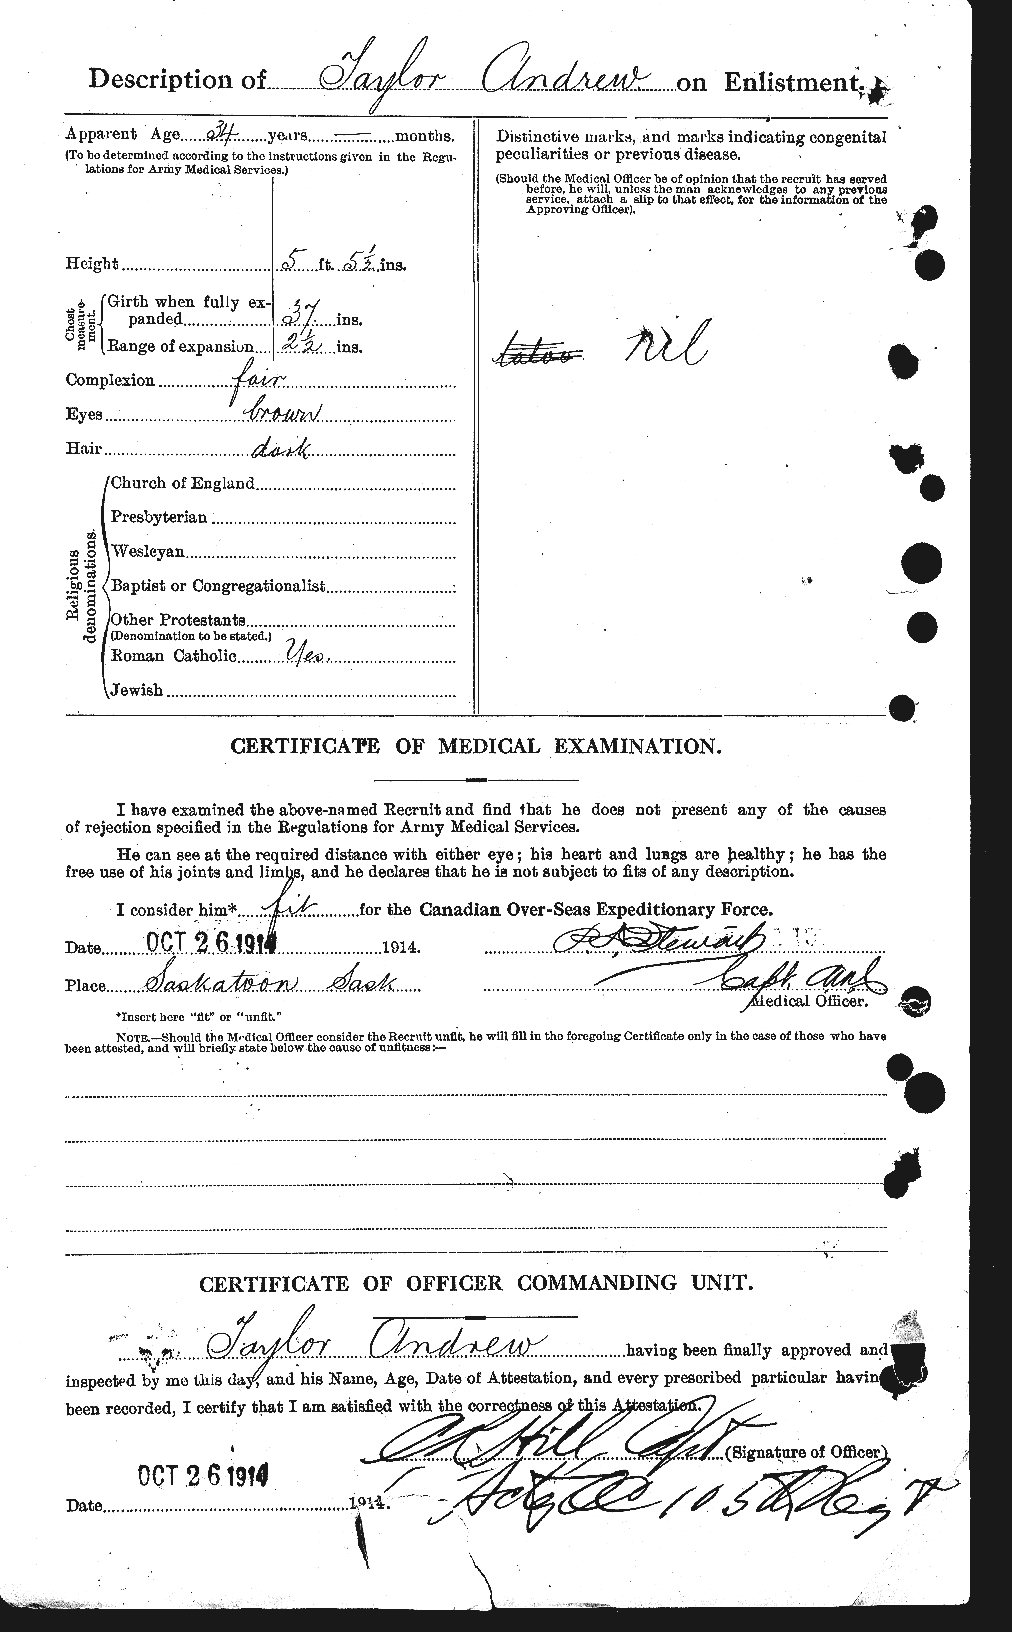 Dossiers du Personnel de la Première Guerre mondiale - CEC 626224b